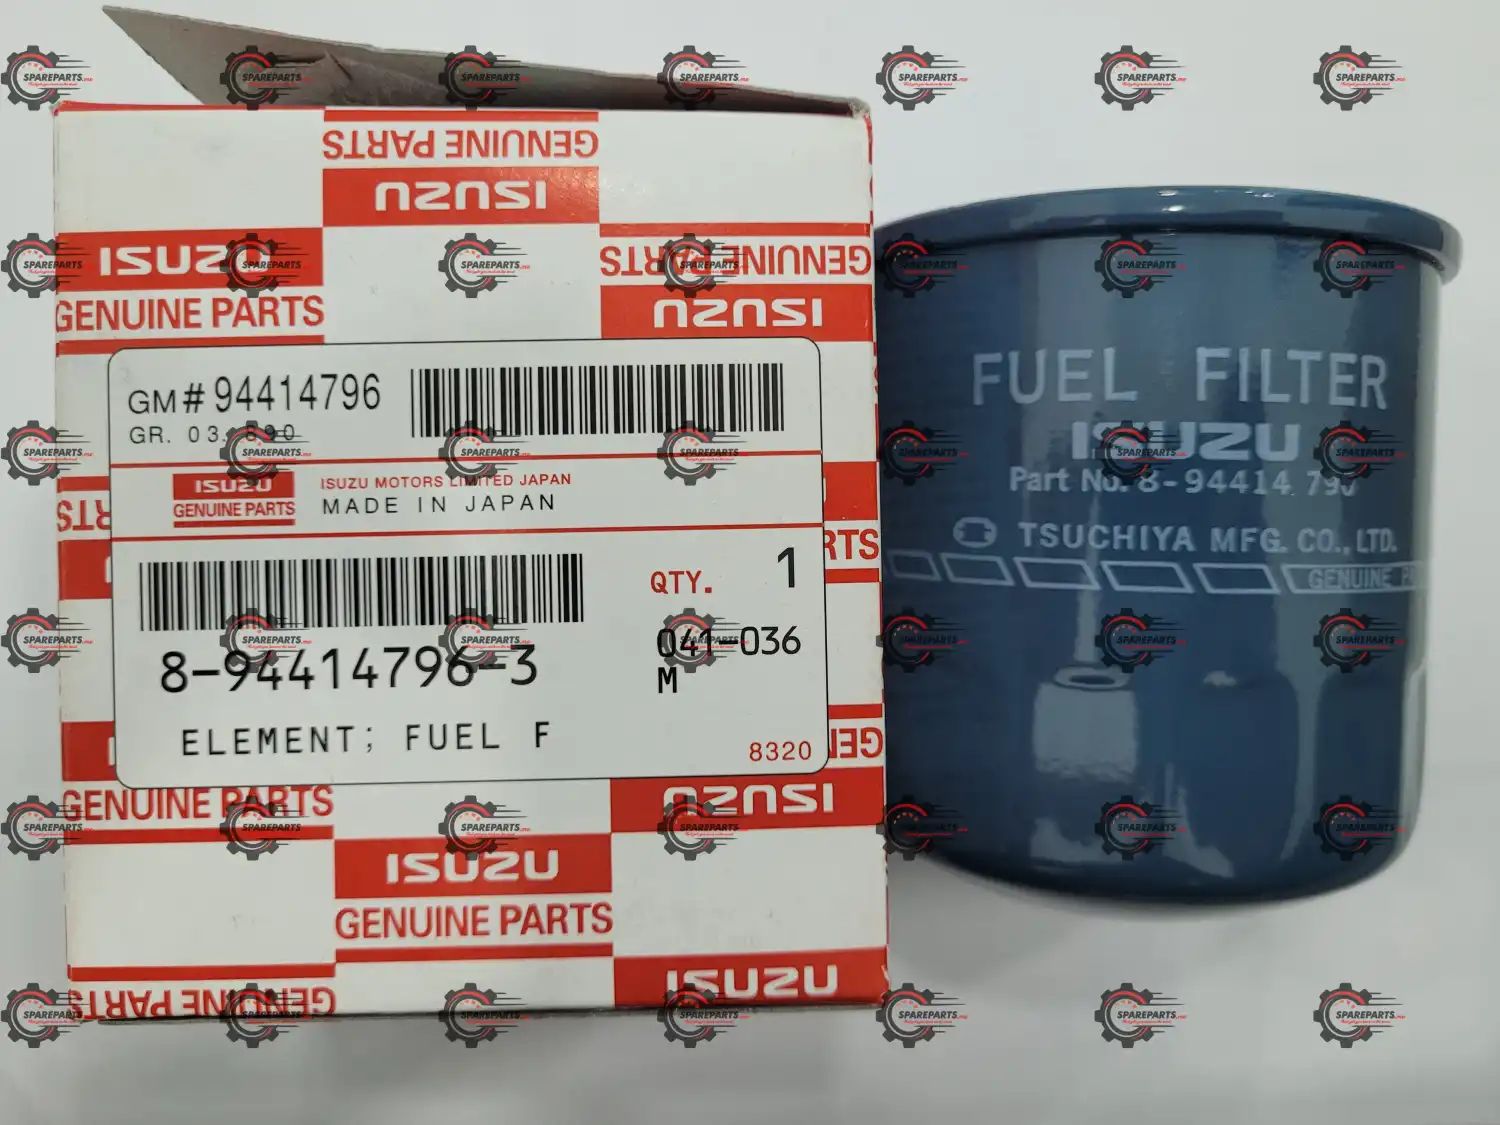 Isuzu fuel filter 8-94414 796